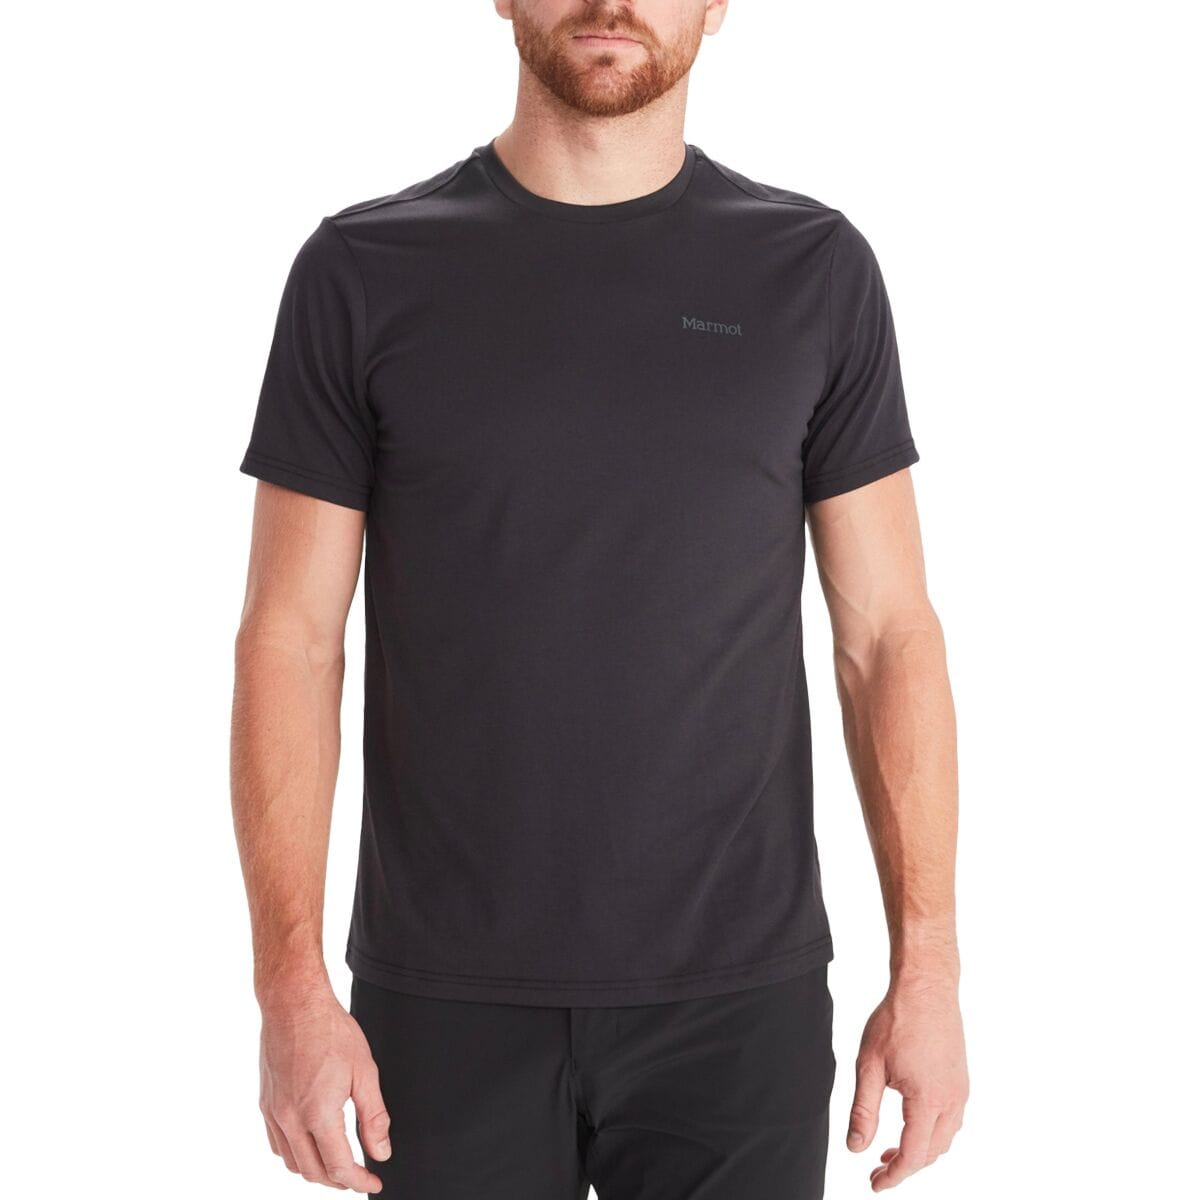 Crossover Short-Sleeve T-Shirt - Men